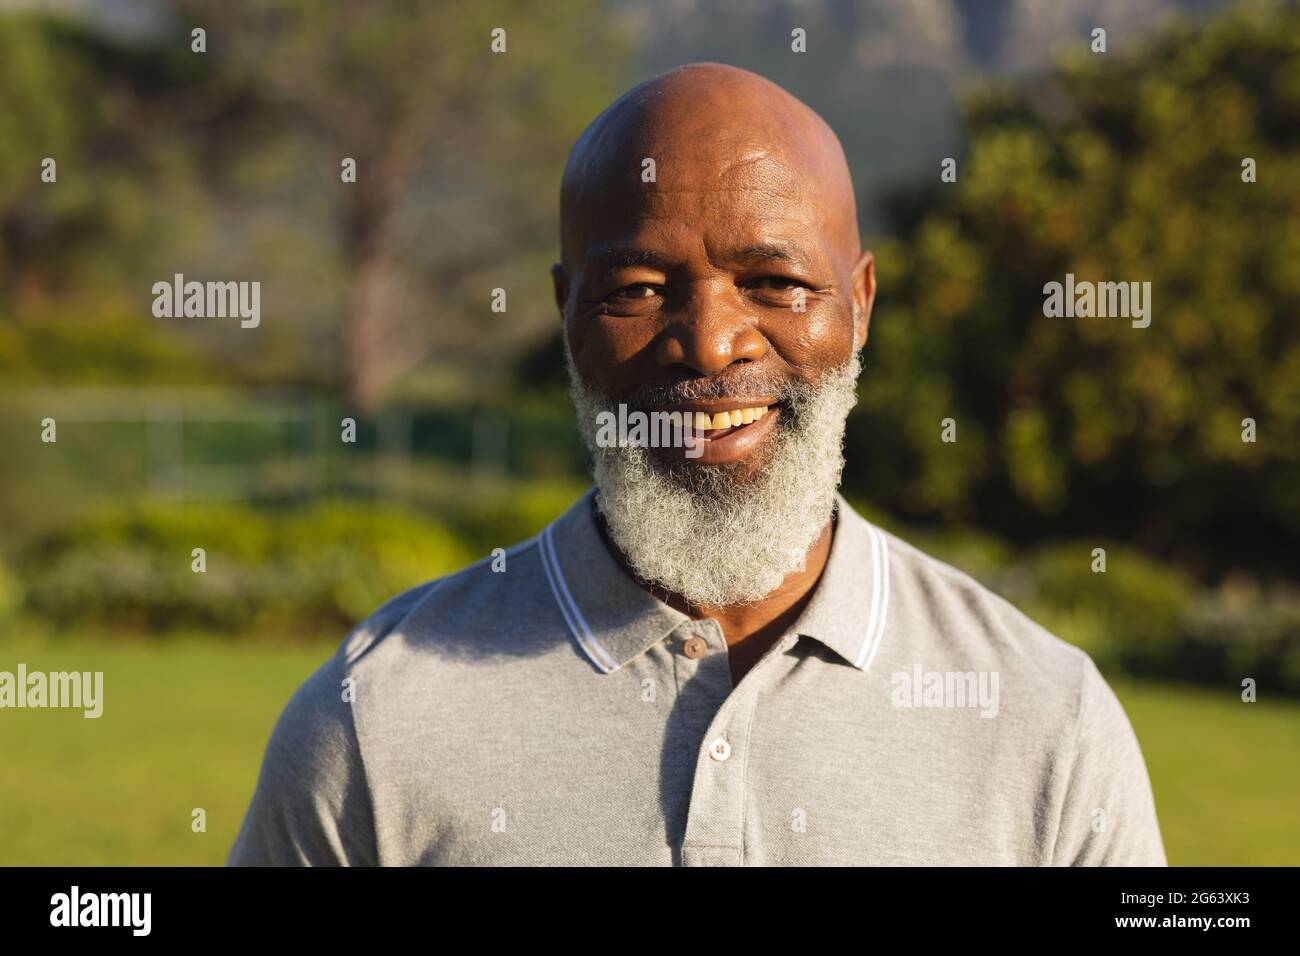 Retrato del sonriente hombre africano-americano mayor en un campo impresionante Foto de stock